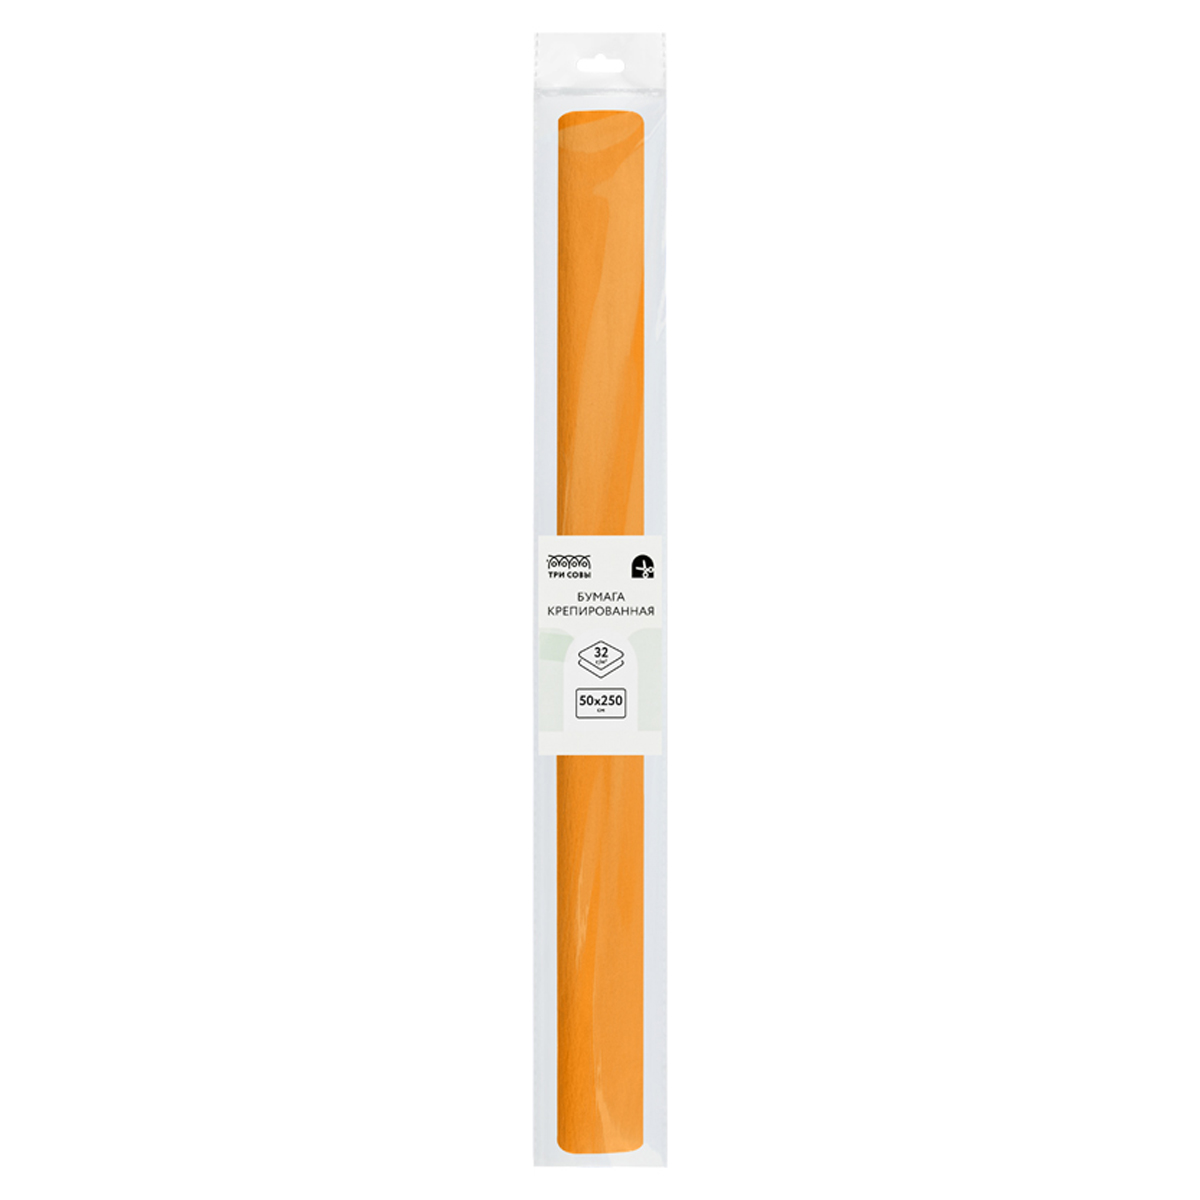 Бумага крепированная ТРИ СОВЫ, 50*250см, 32г/м2, светло-оранжевая, в рулоне, пакет с ев